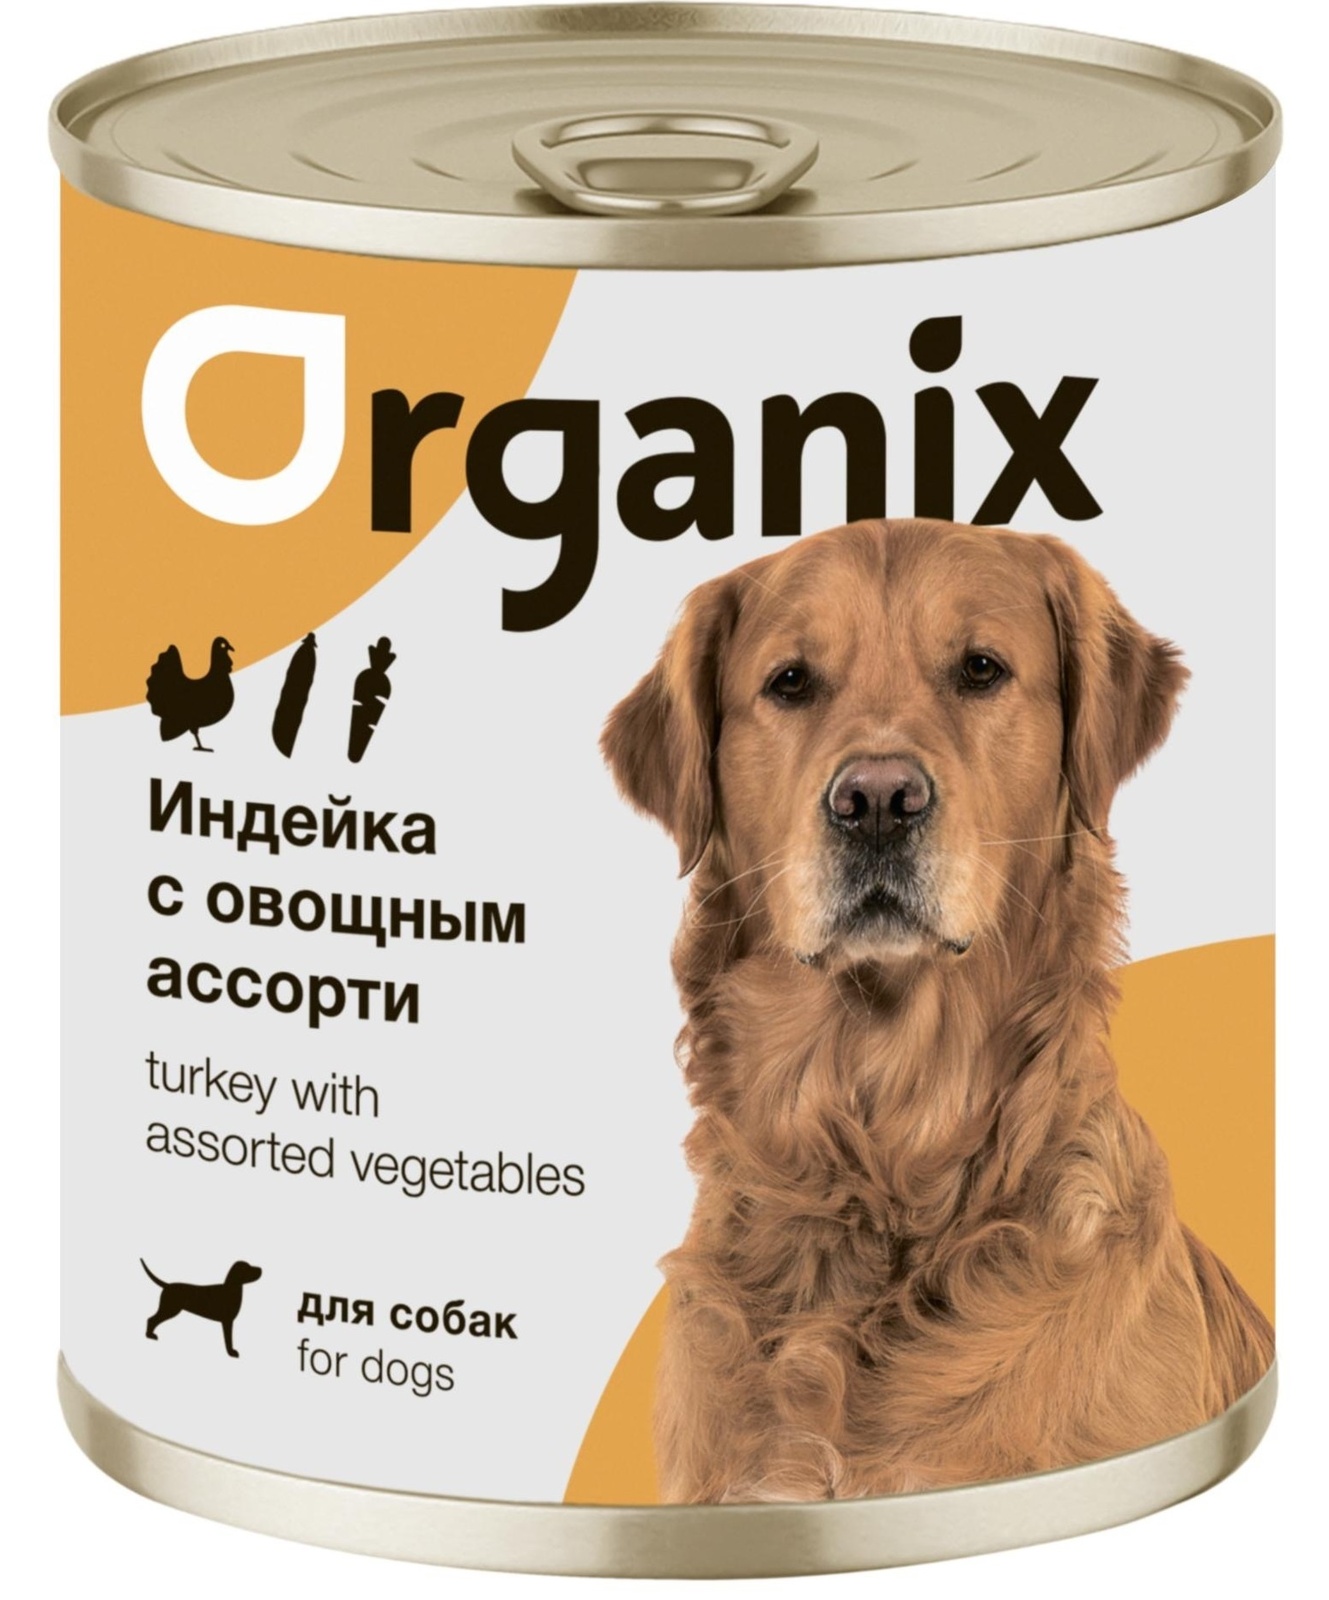 Organix консервы Organix консервы для собак Индейка с овощным ассорти (400 г) organix консервы organix консервы для собак индейка с овощным ассорти 400 г